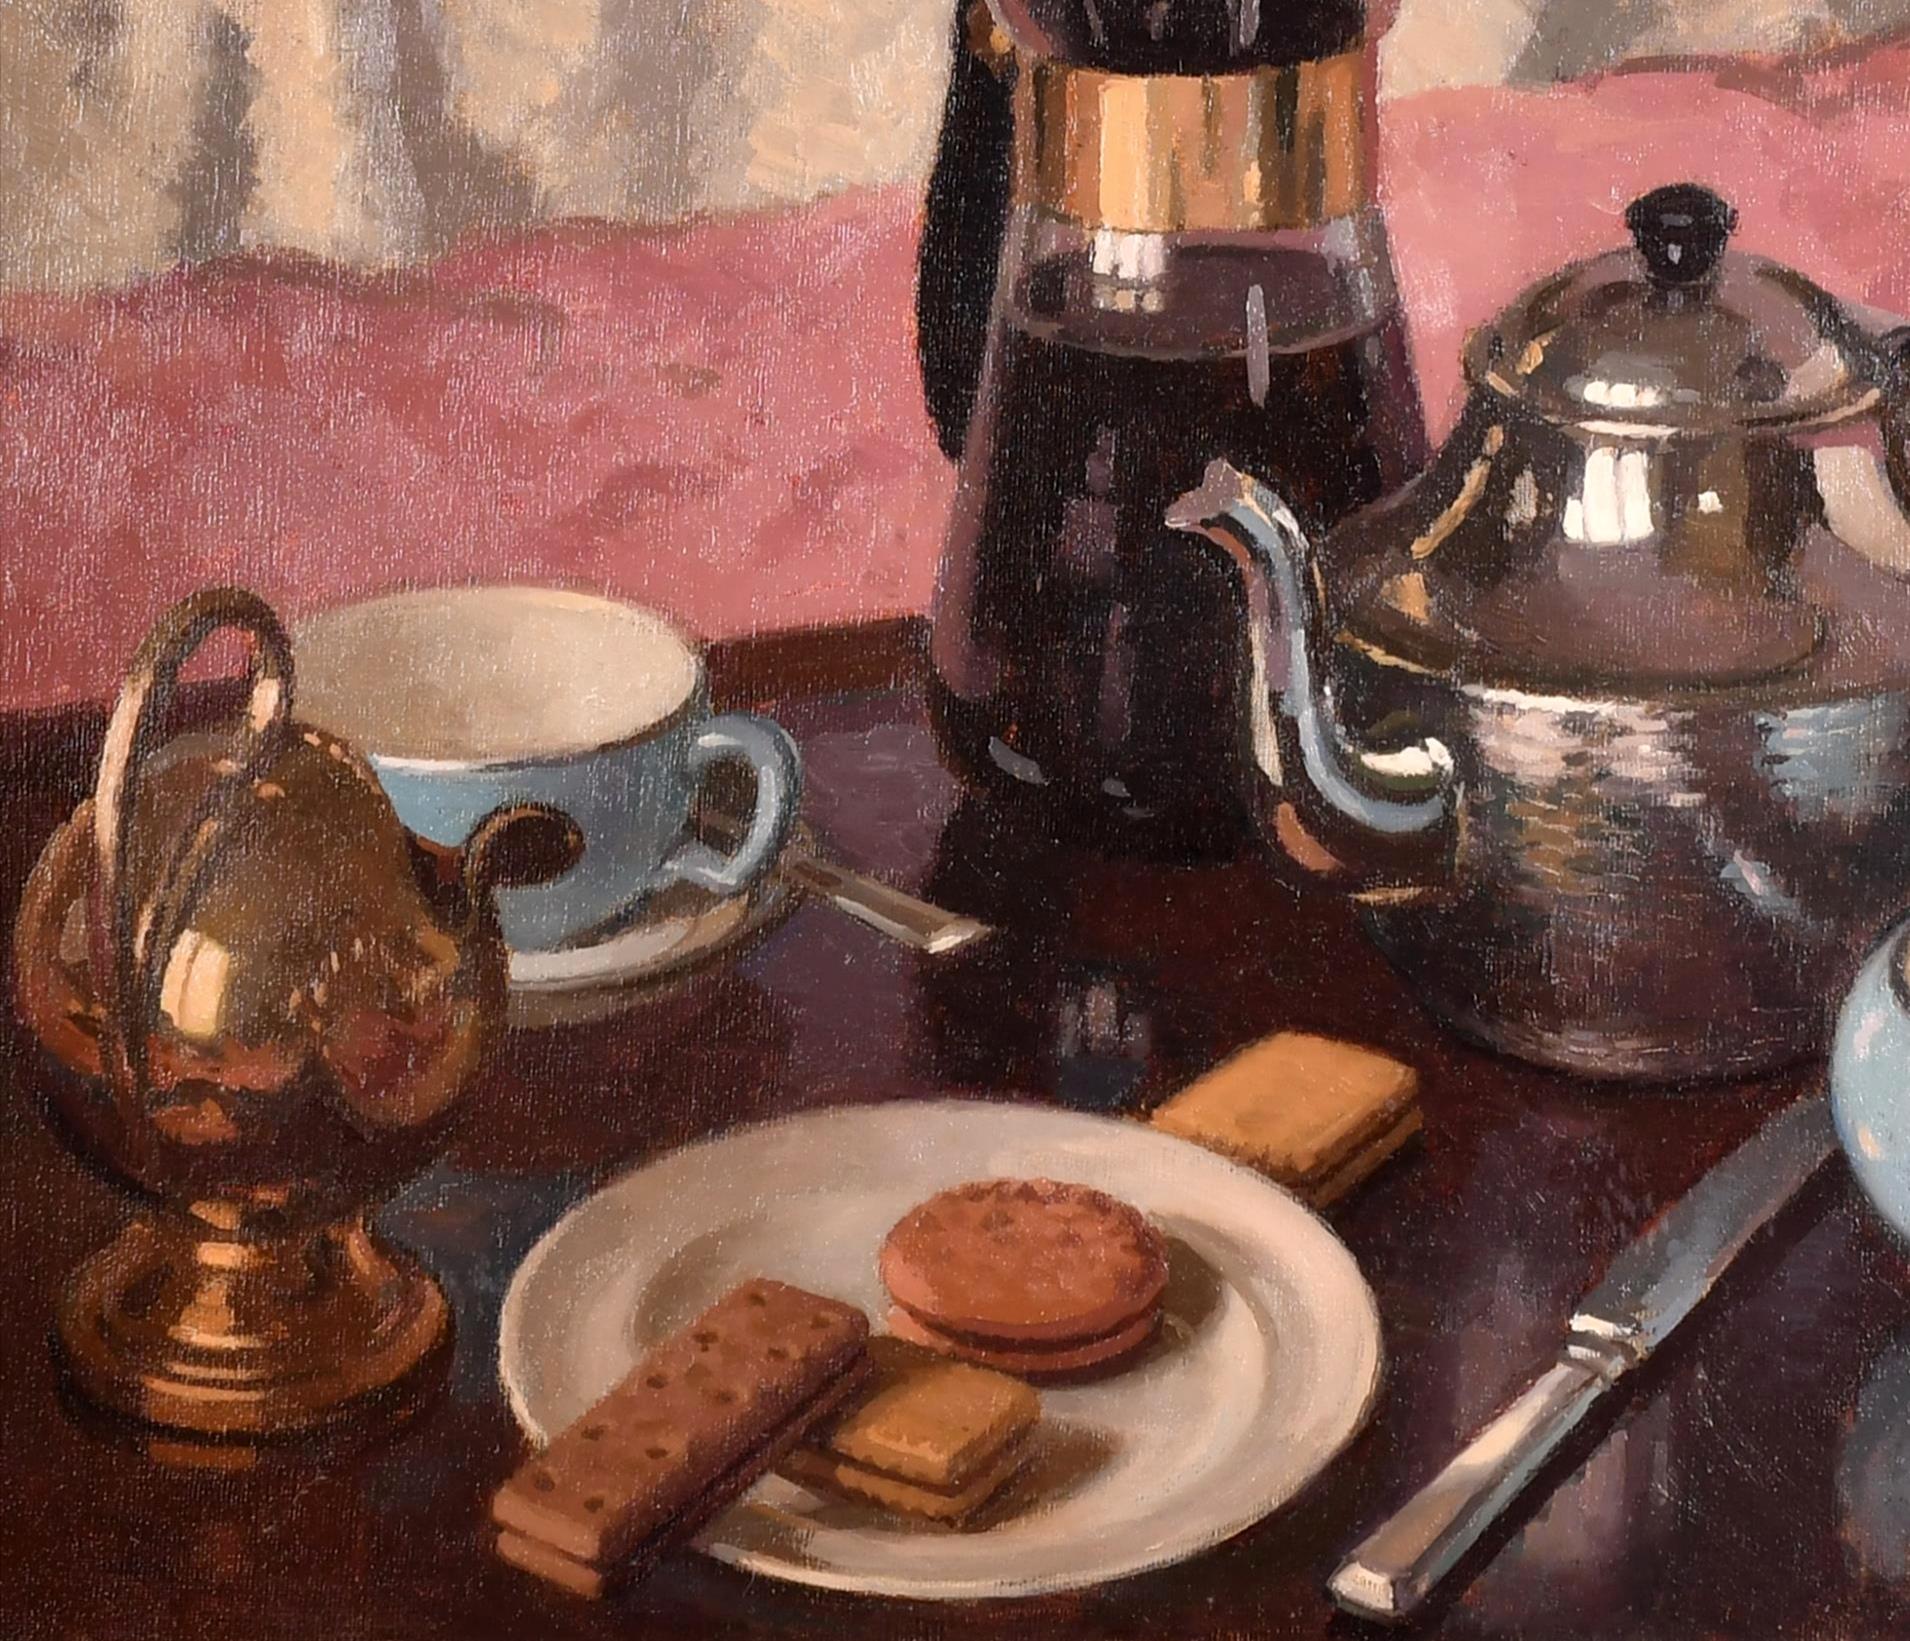 Ein sehr schönes Stillleben in Öl auf Karton aus den 1960er Jahren mit dem Titel ''Tea or Coffee'' von Edward Albert Hickling. Der Tisch ist für Nachmittagsgebäck mit einer Auswahl an Tee- und Kaffeekannen gedeckt.

Ein Stillleben von hervorragender